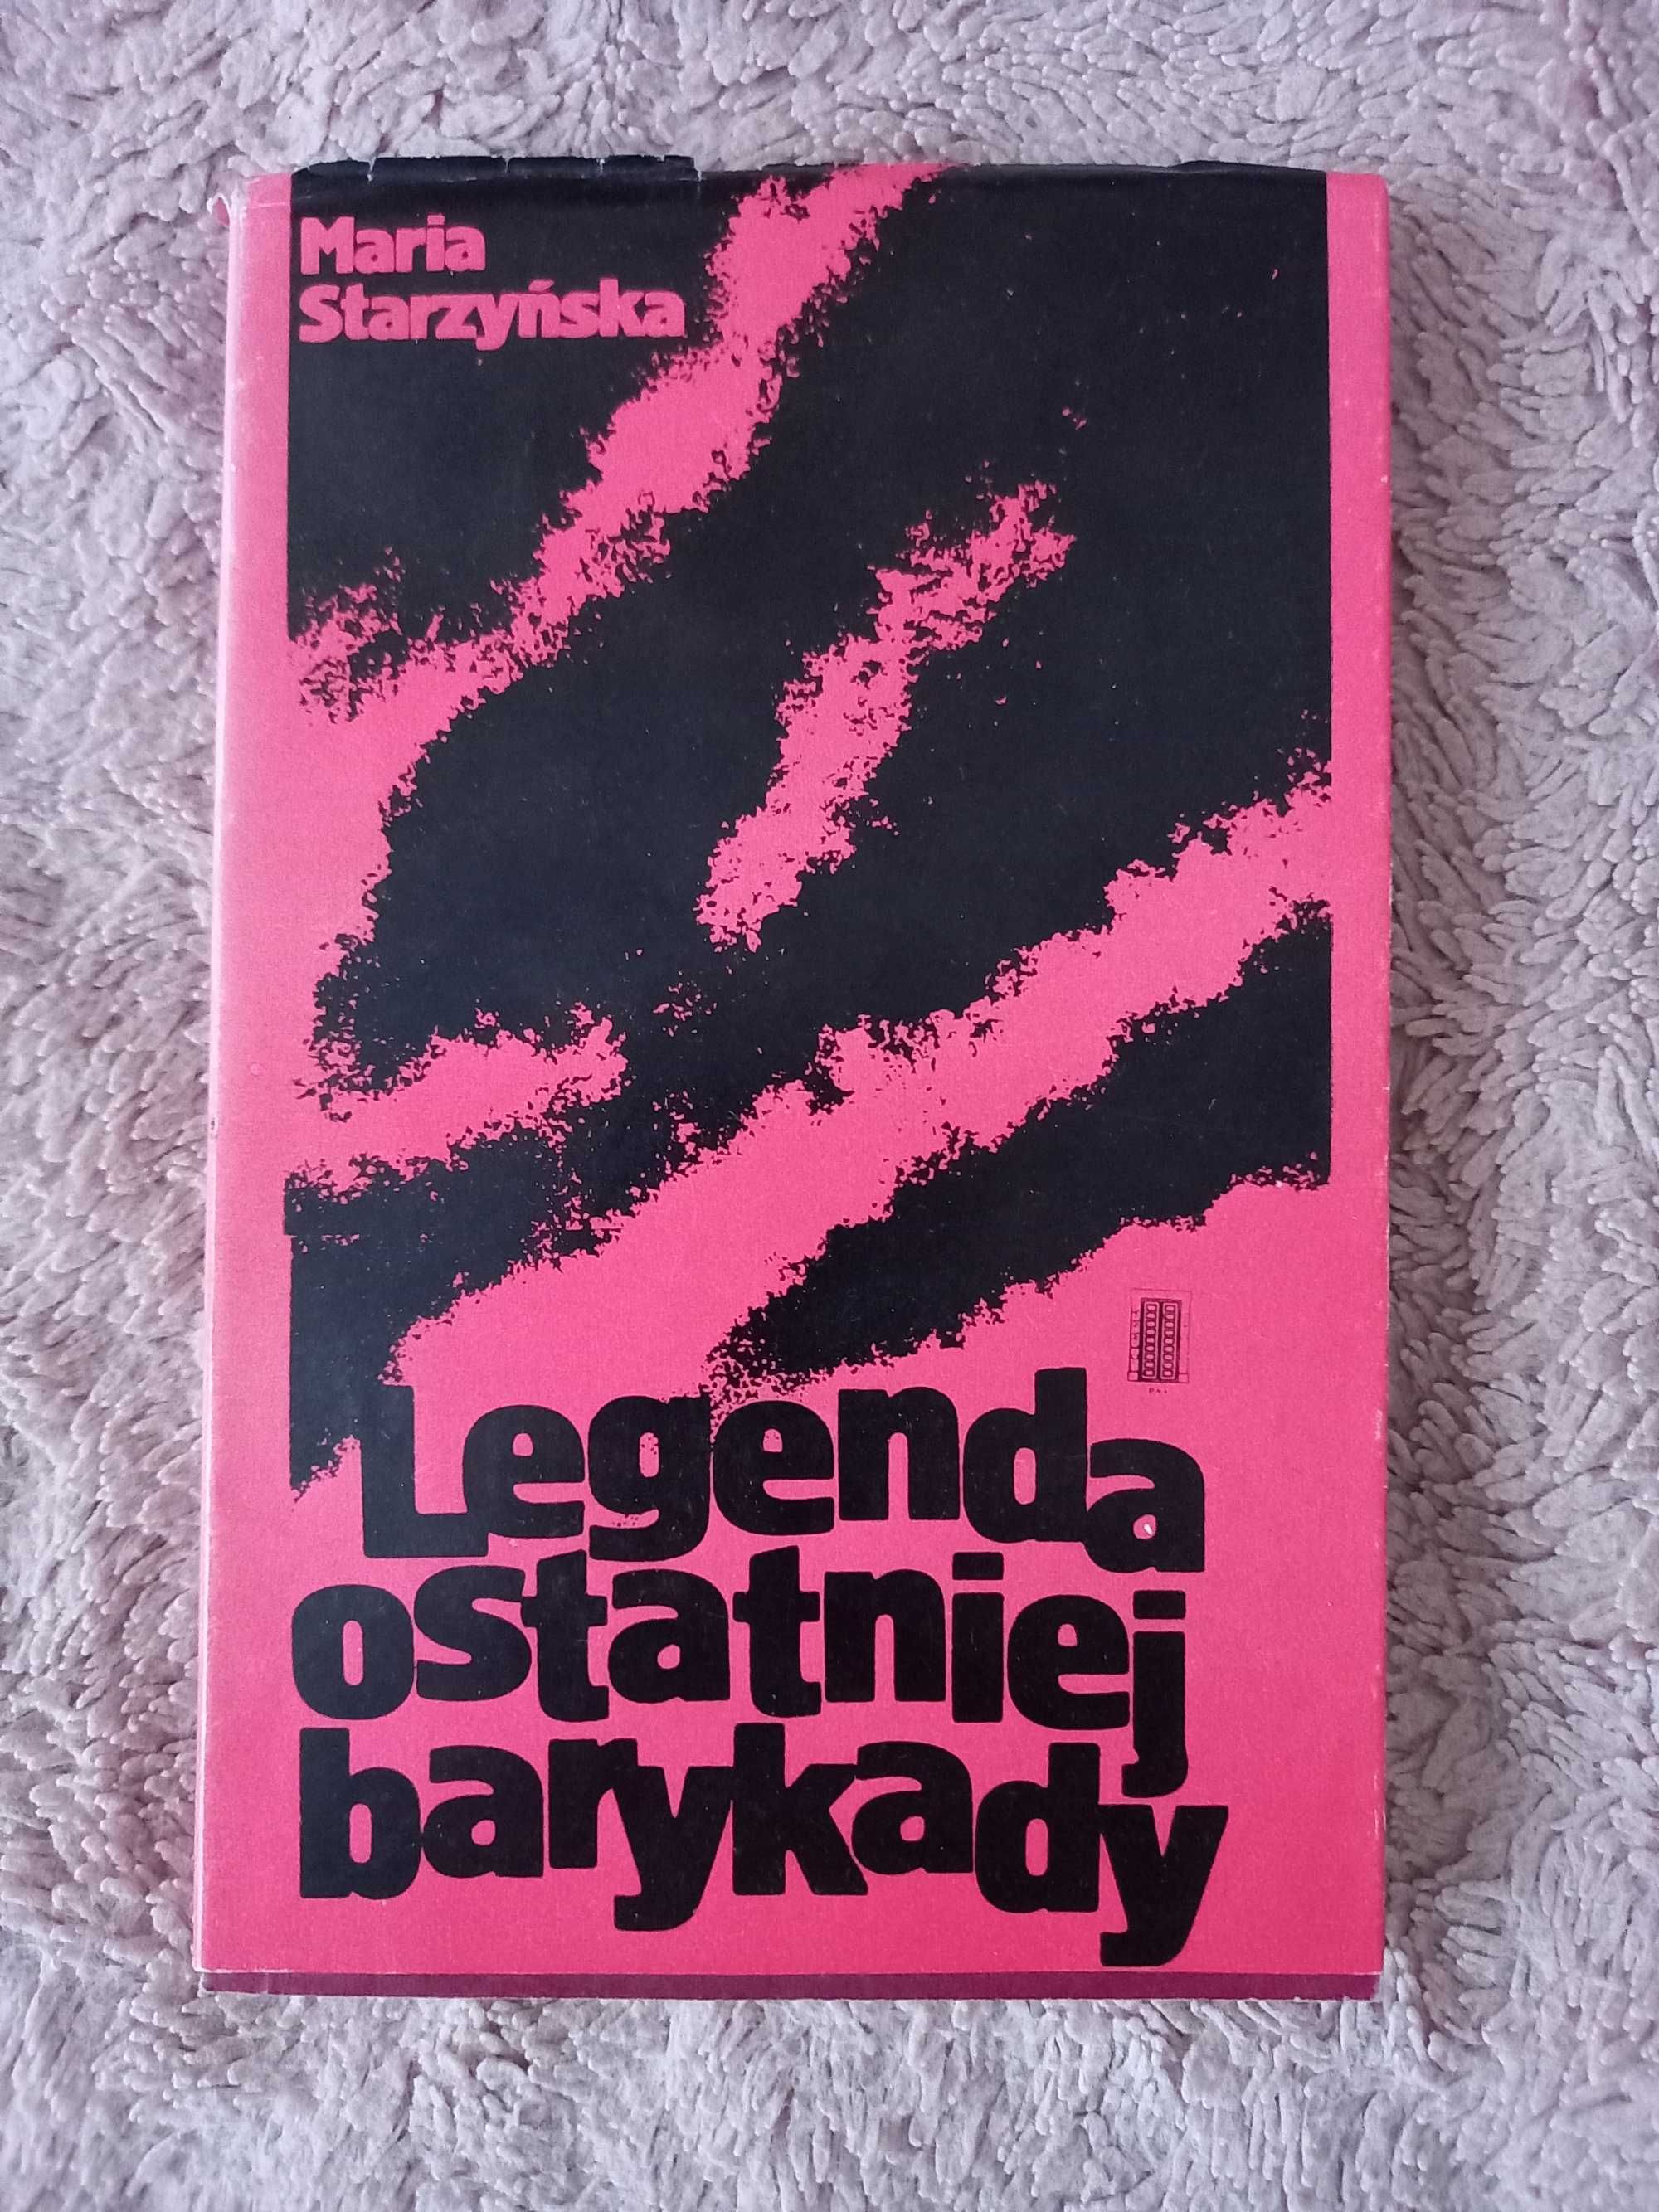 "Legenda ostatniej barykady", Maria Starzyńska